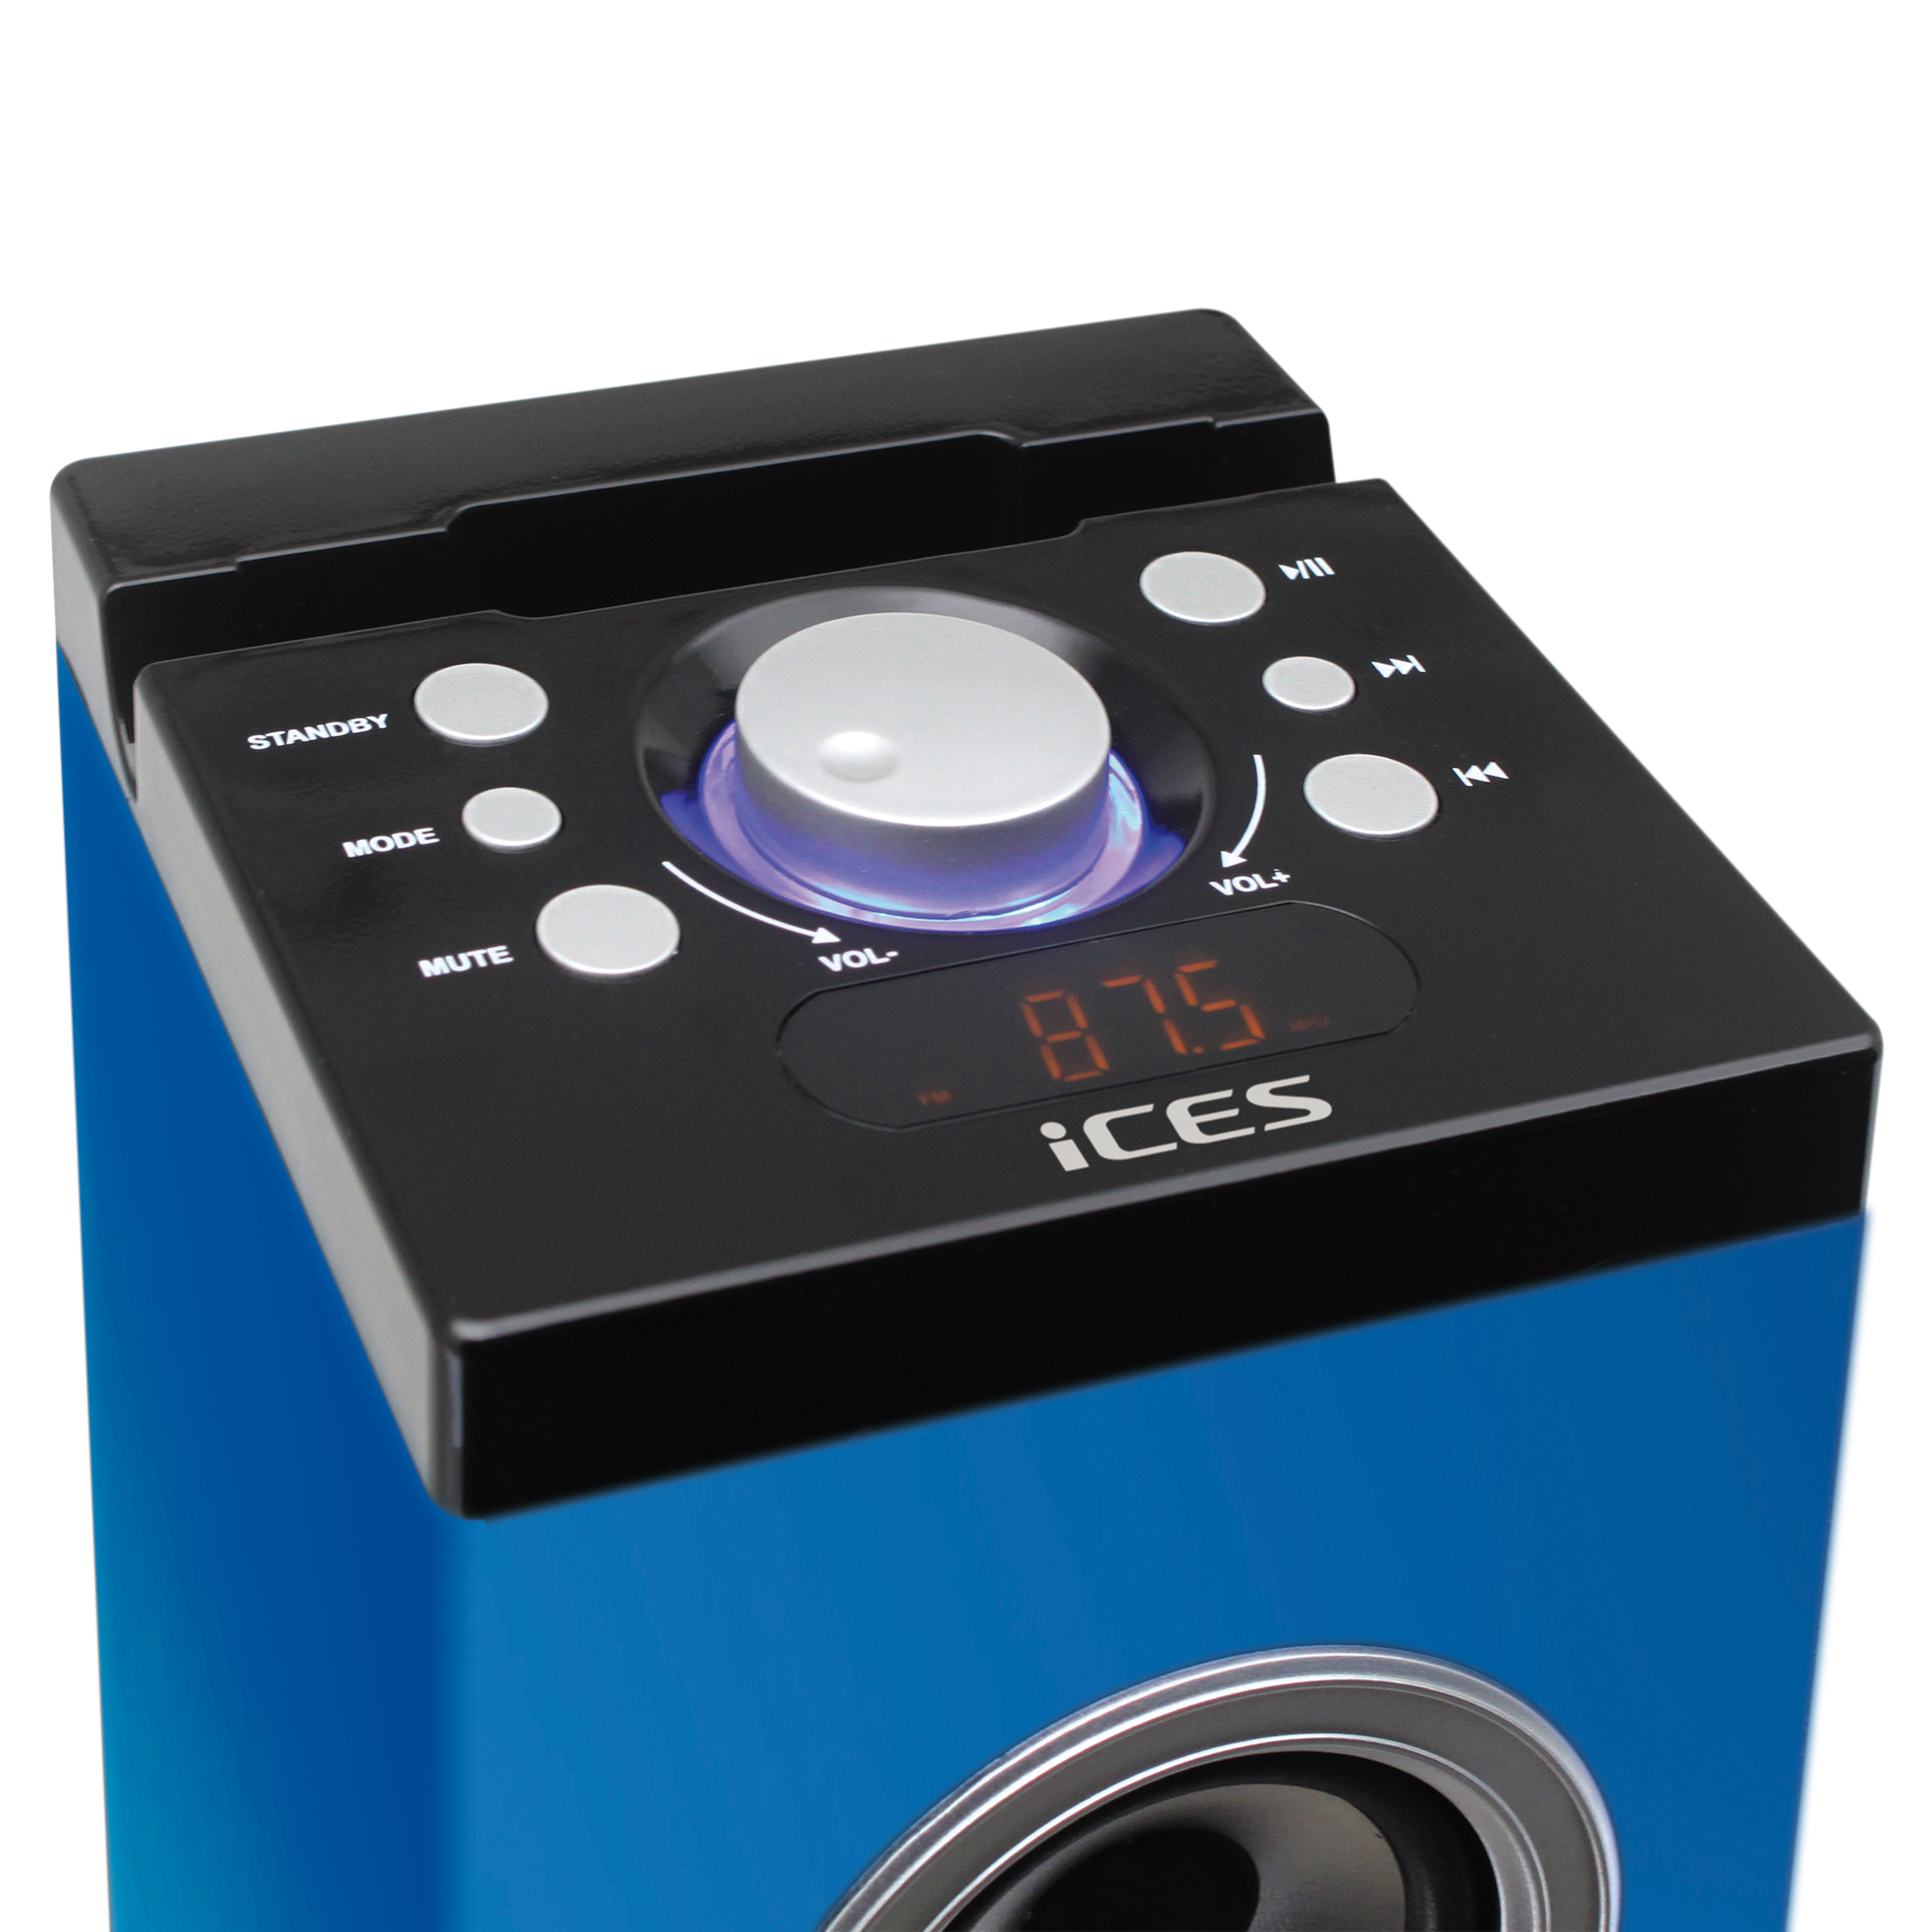 ICES IBT-6 Sea Lautsprecherturm mit Bluetooth®, SD-Karten-Player, USB- und Blau-Grün FM-Radio